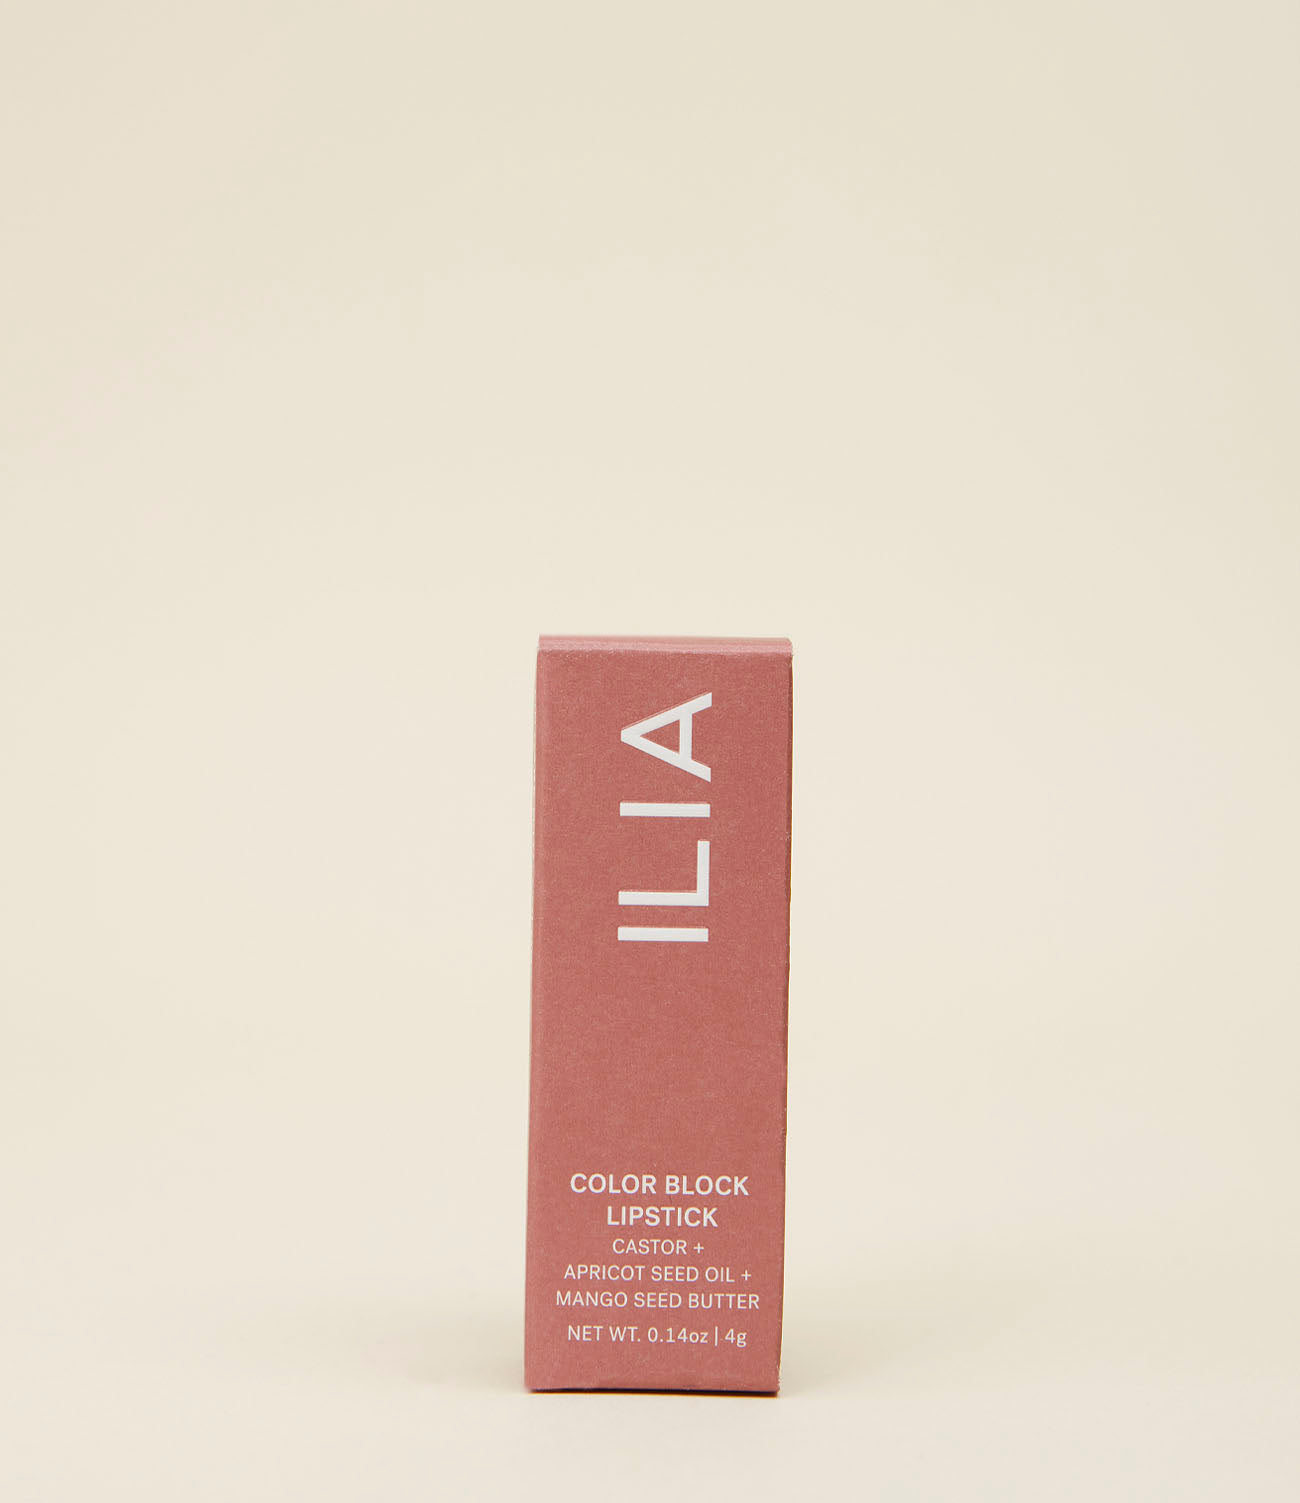 Rouge à lèvres color block Ilia en tube. Packaging carton.